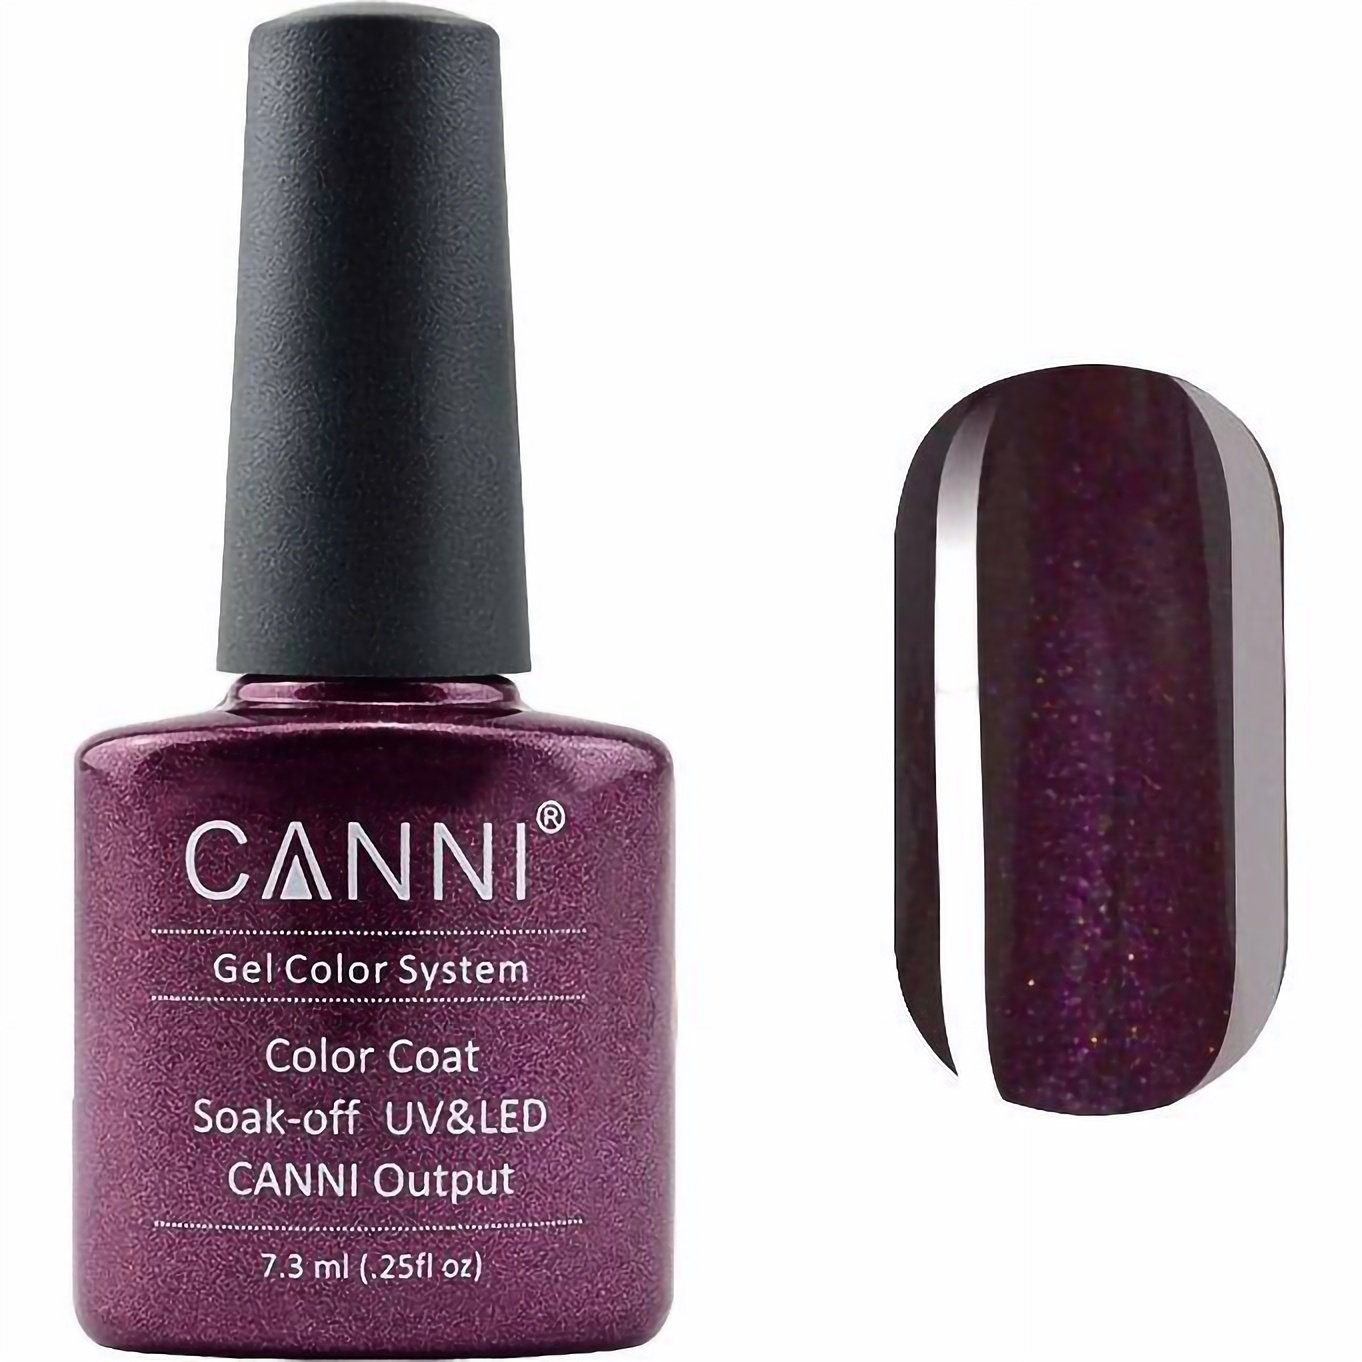 Гель-лак Canni Color Coat Soak-off UV&LED 212 винный с микроблеском 7.3 мл - фото 1